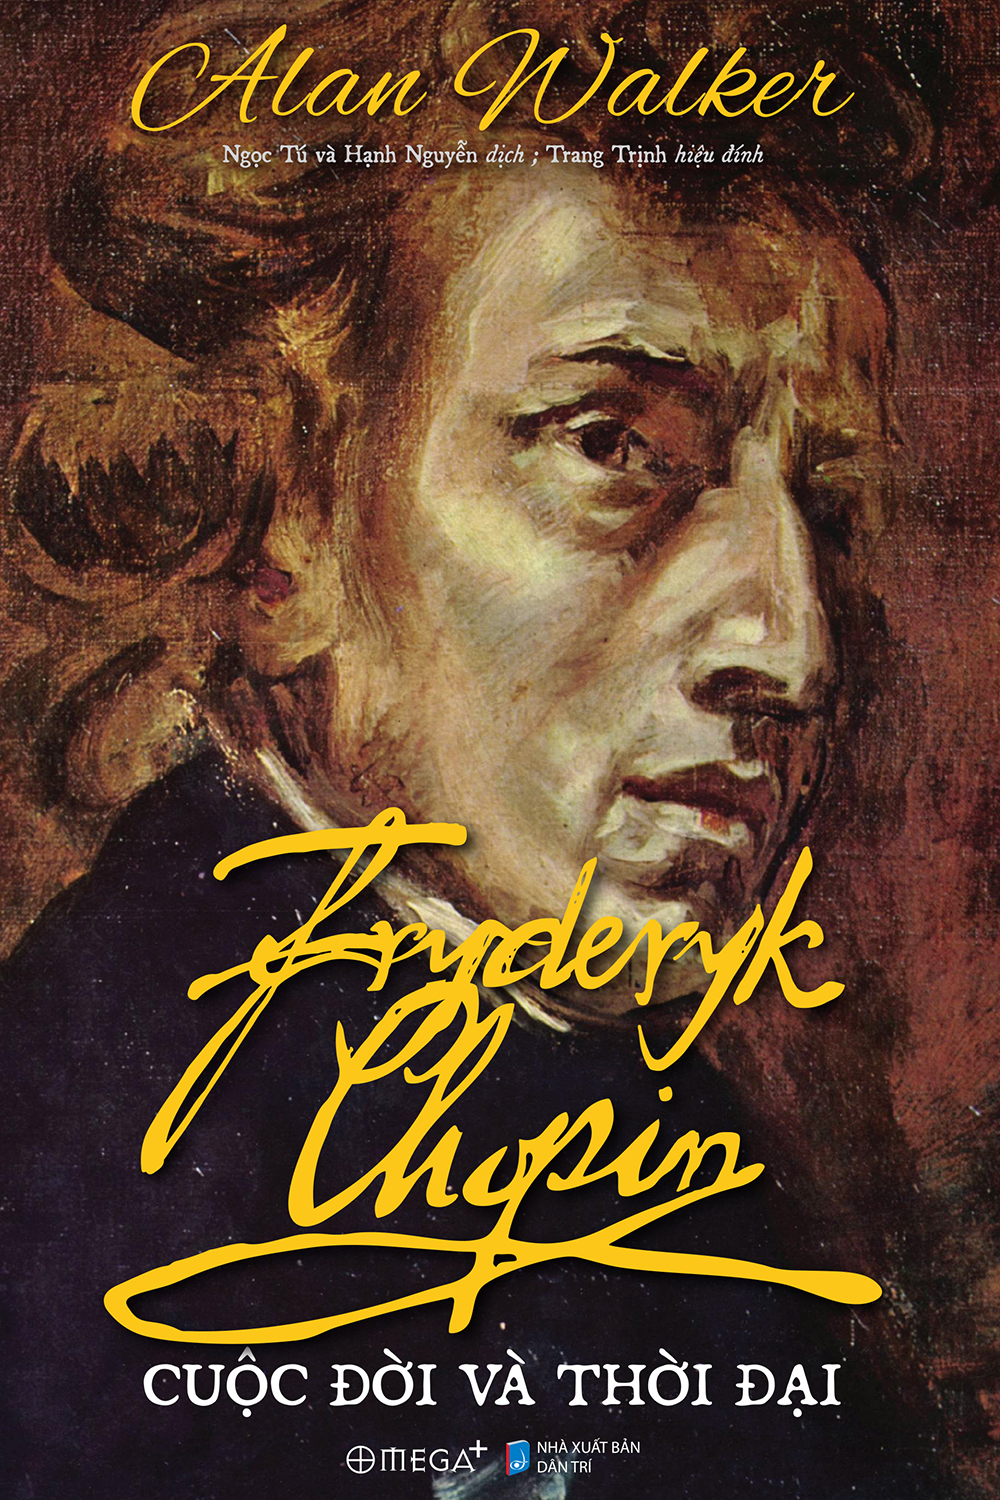 Harper's Bazaar_Sách Fryderyk Chopin A Life and Times_03